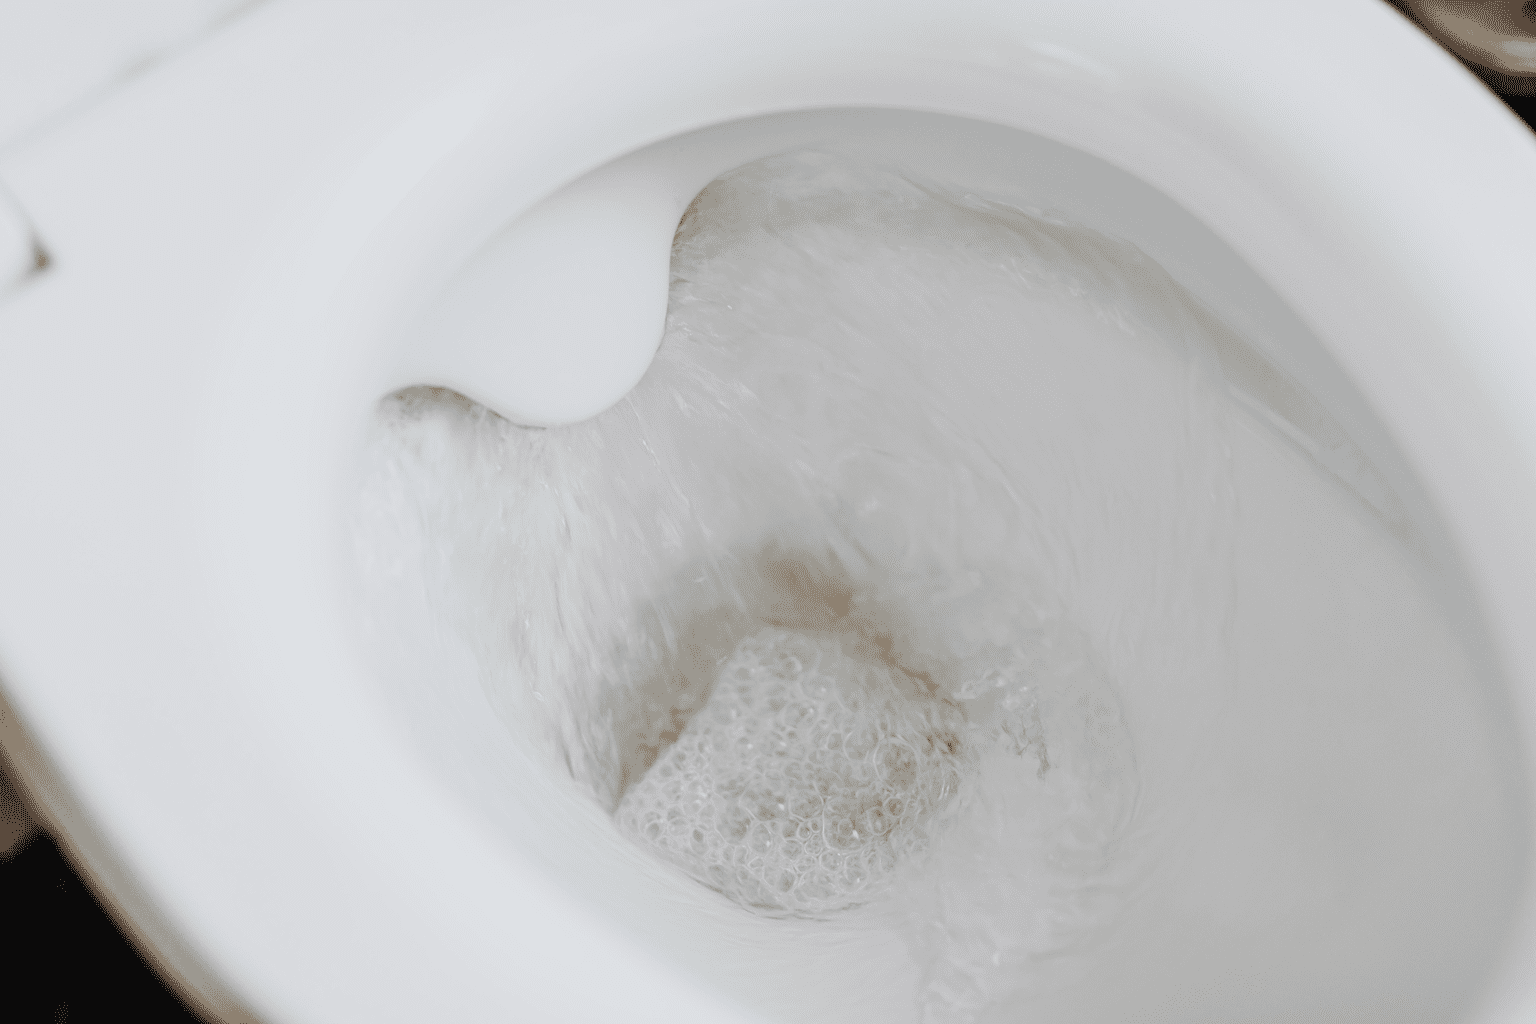 Flushing water in white toilet bowl: https://www.pexels.com/photo/flushing-water-in-white-toilet-bowl-4239015/